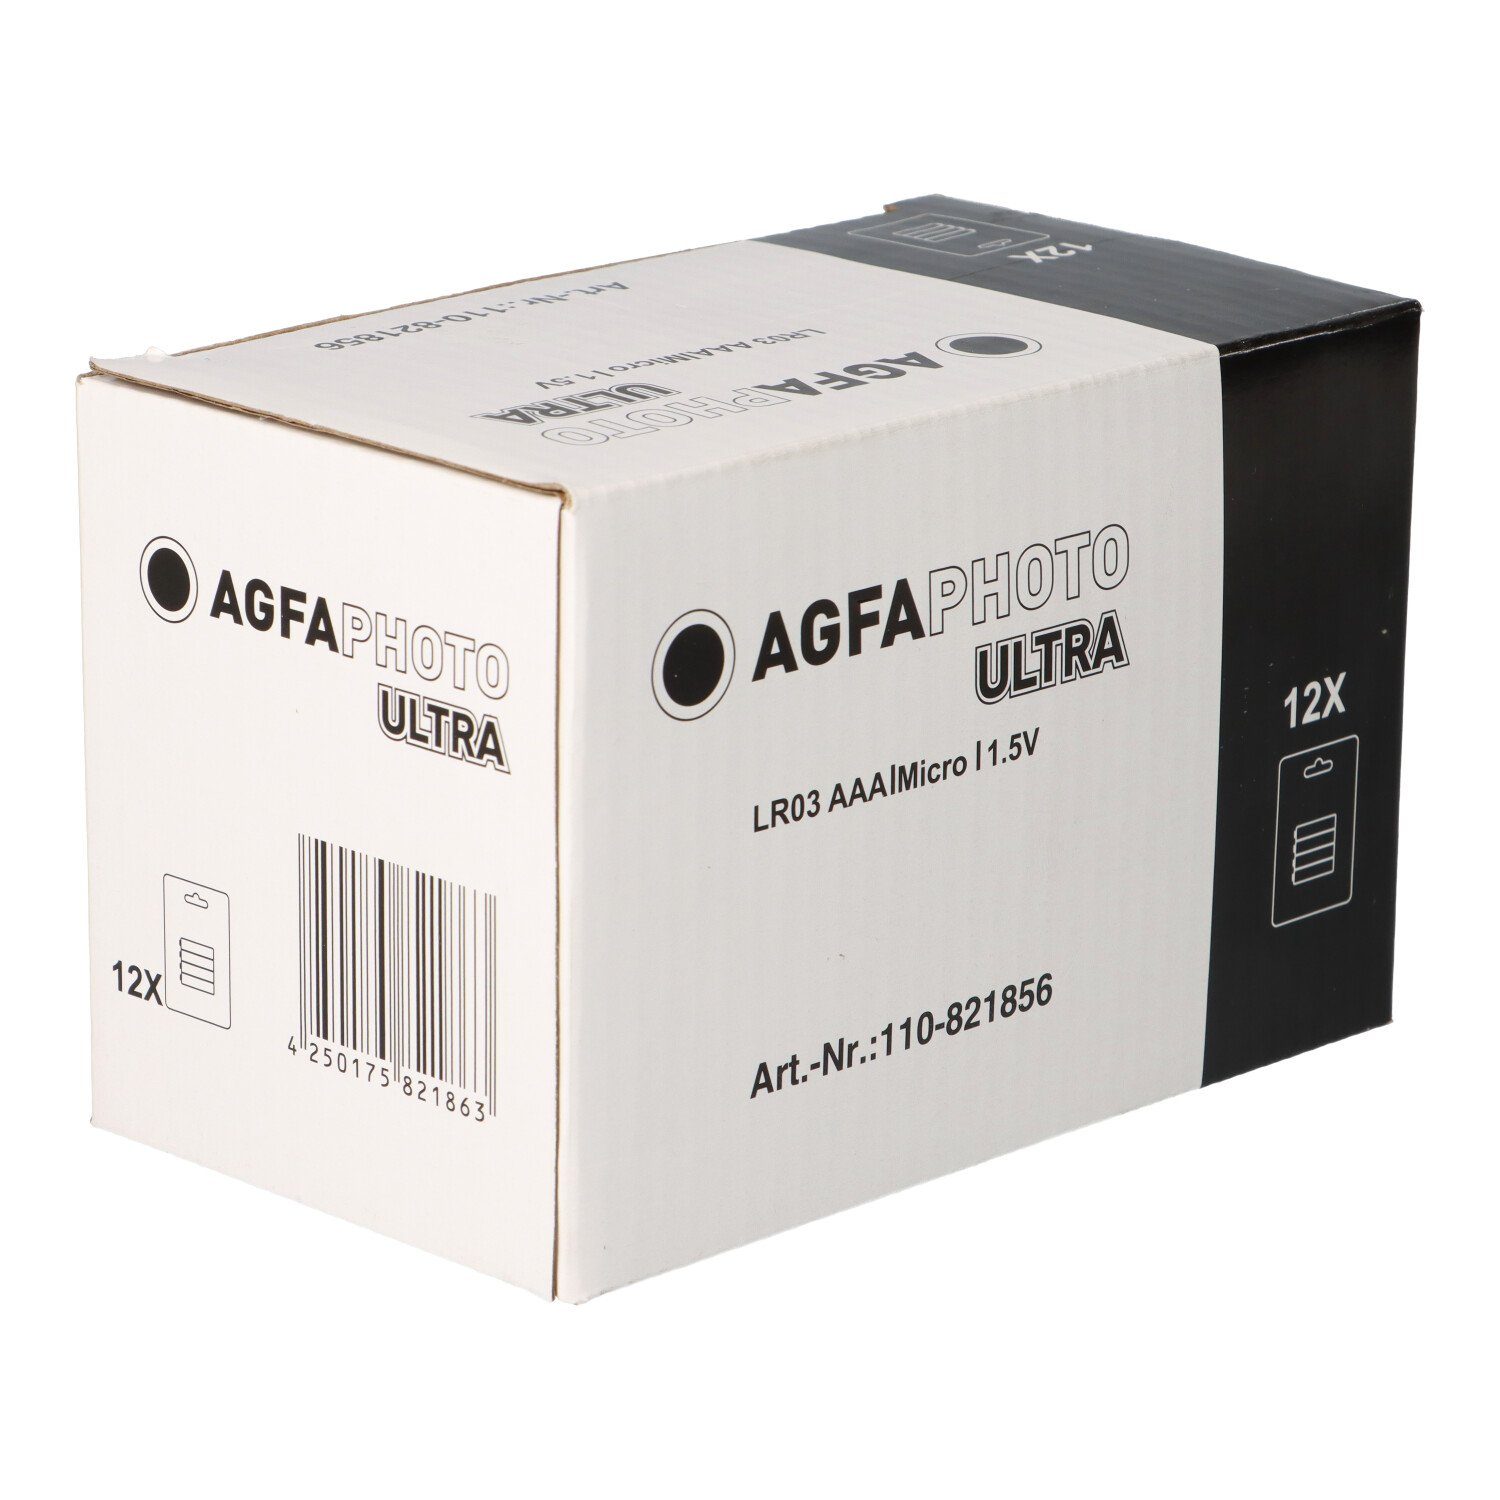 AAA AgfaPhoto Batterie Blister 4er Ultra Stück 1.5V 12x 48 AGFAPHOTO Batterie